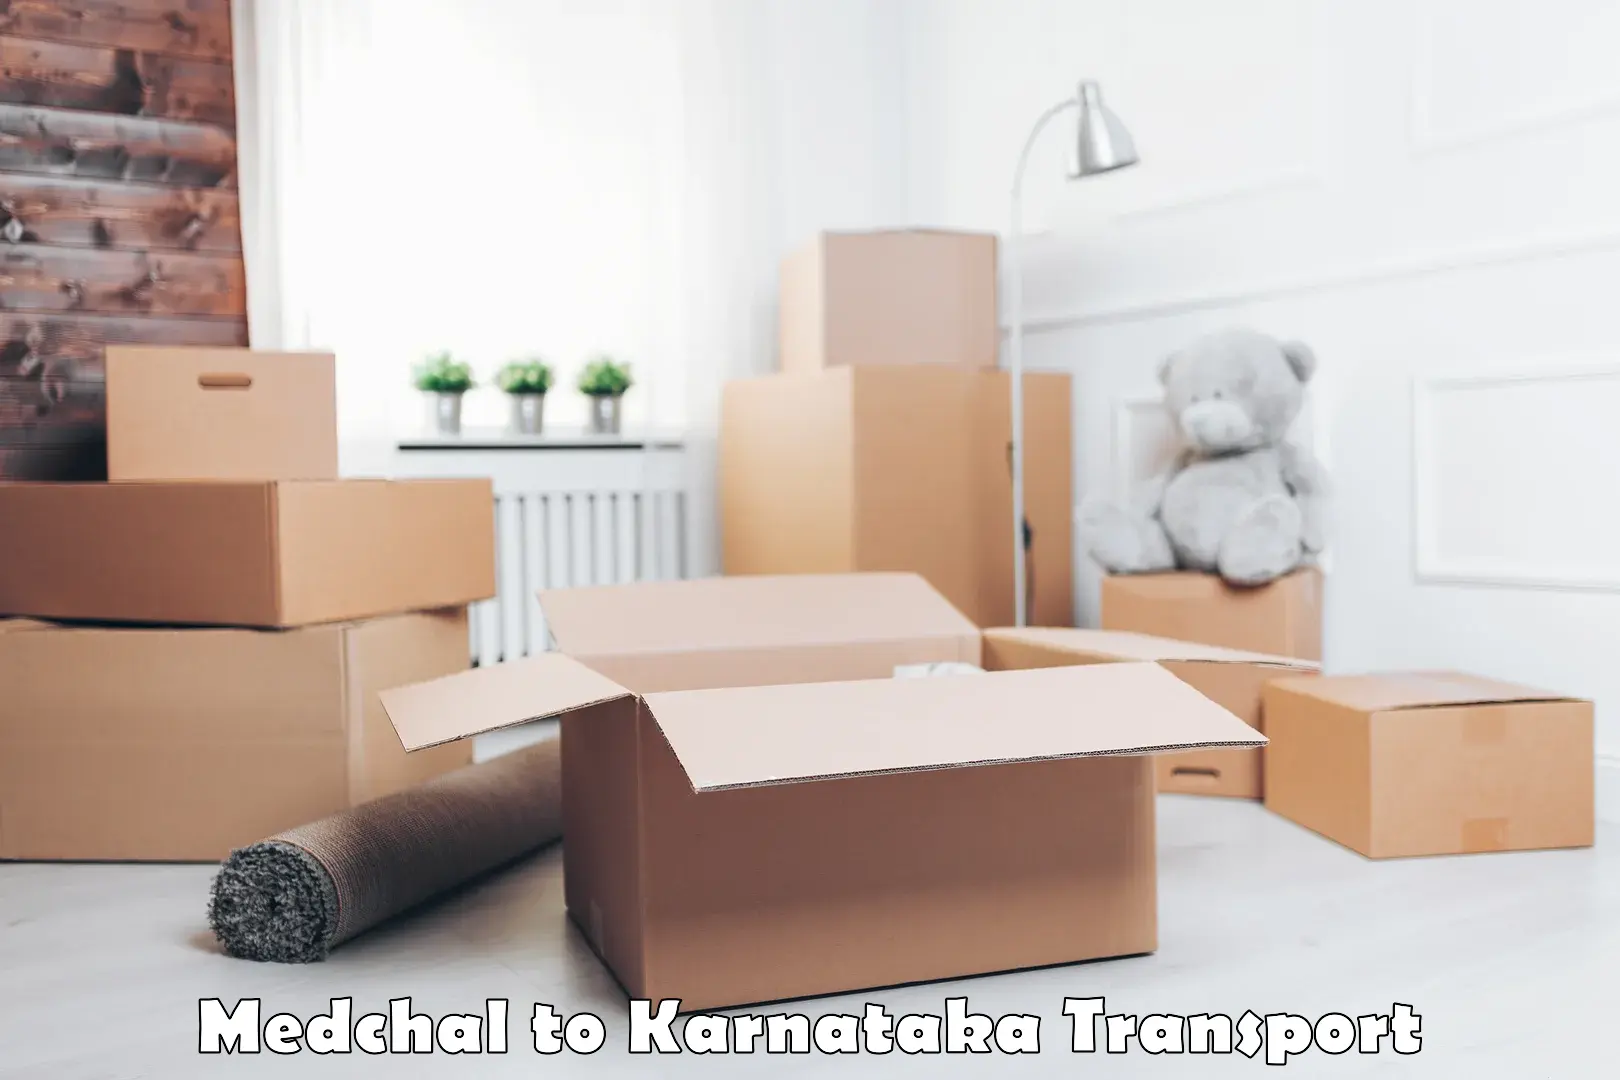 Cargo transport services Medchal to Sringeri